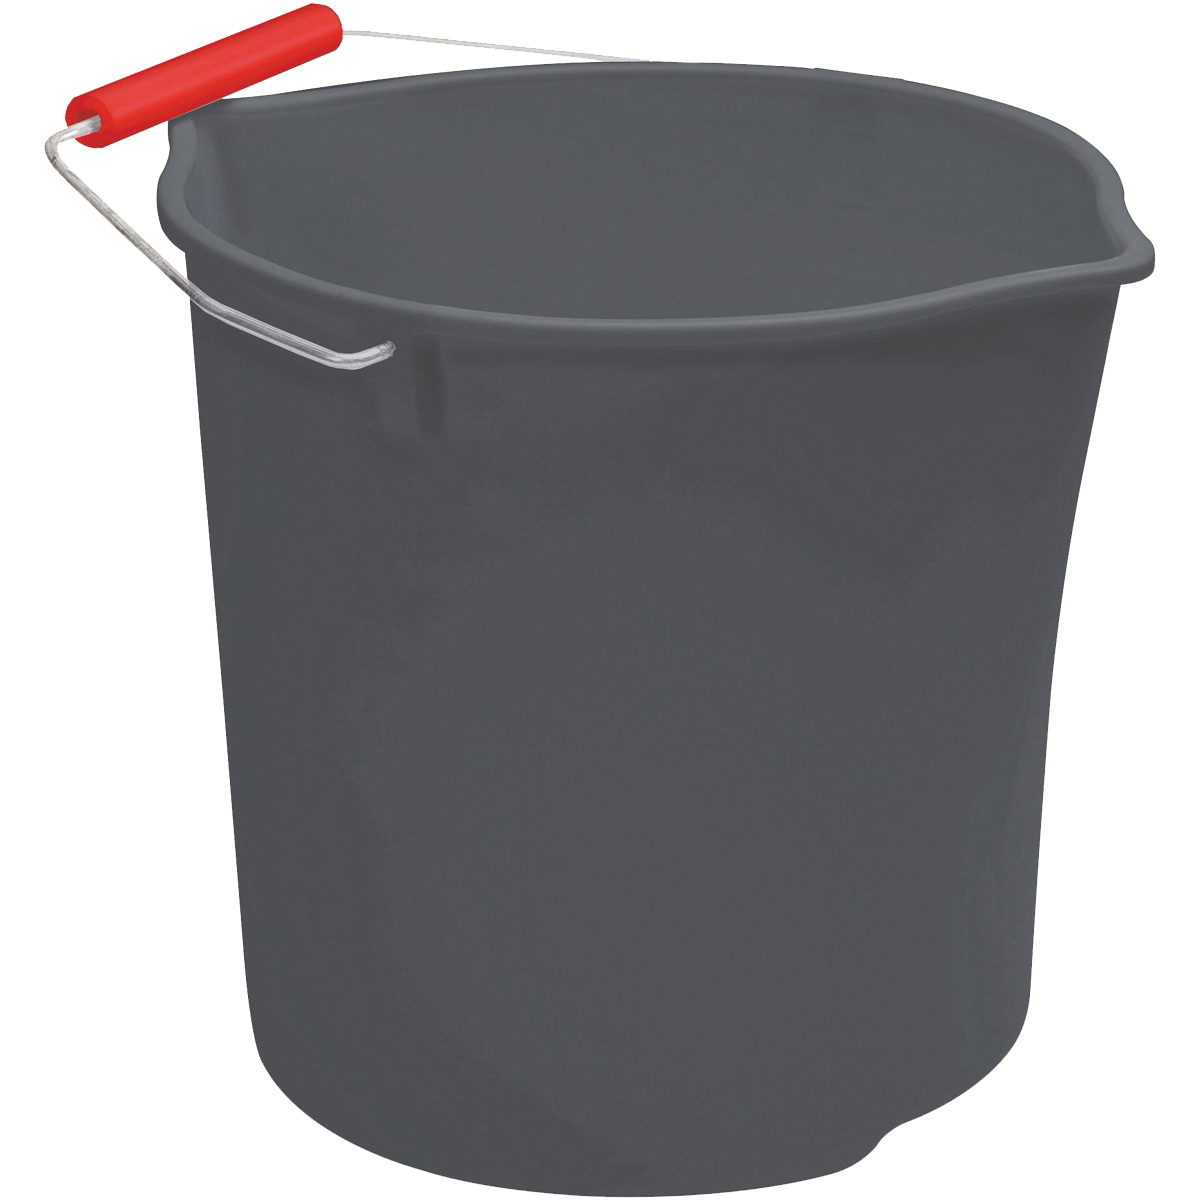 2077957 Bucket, 11 qt Capacity, Plastic, Gray